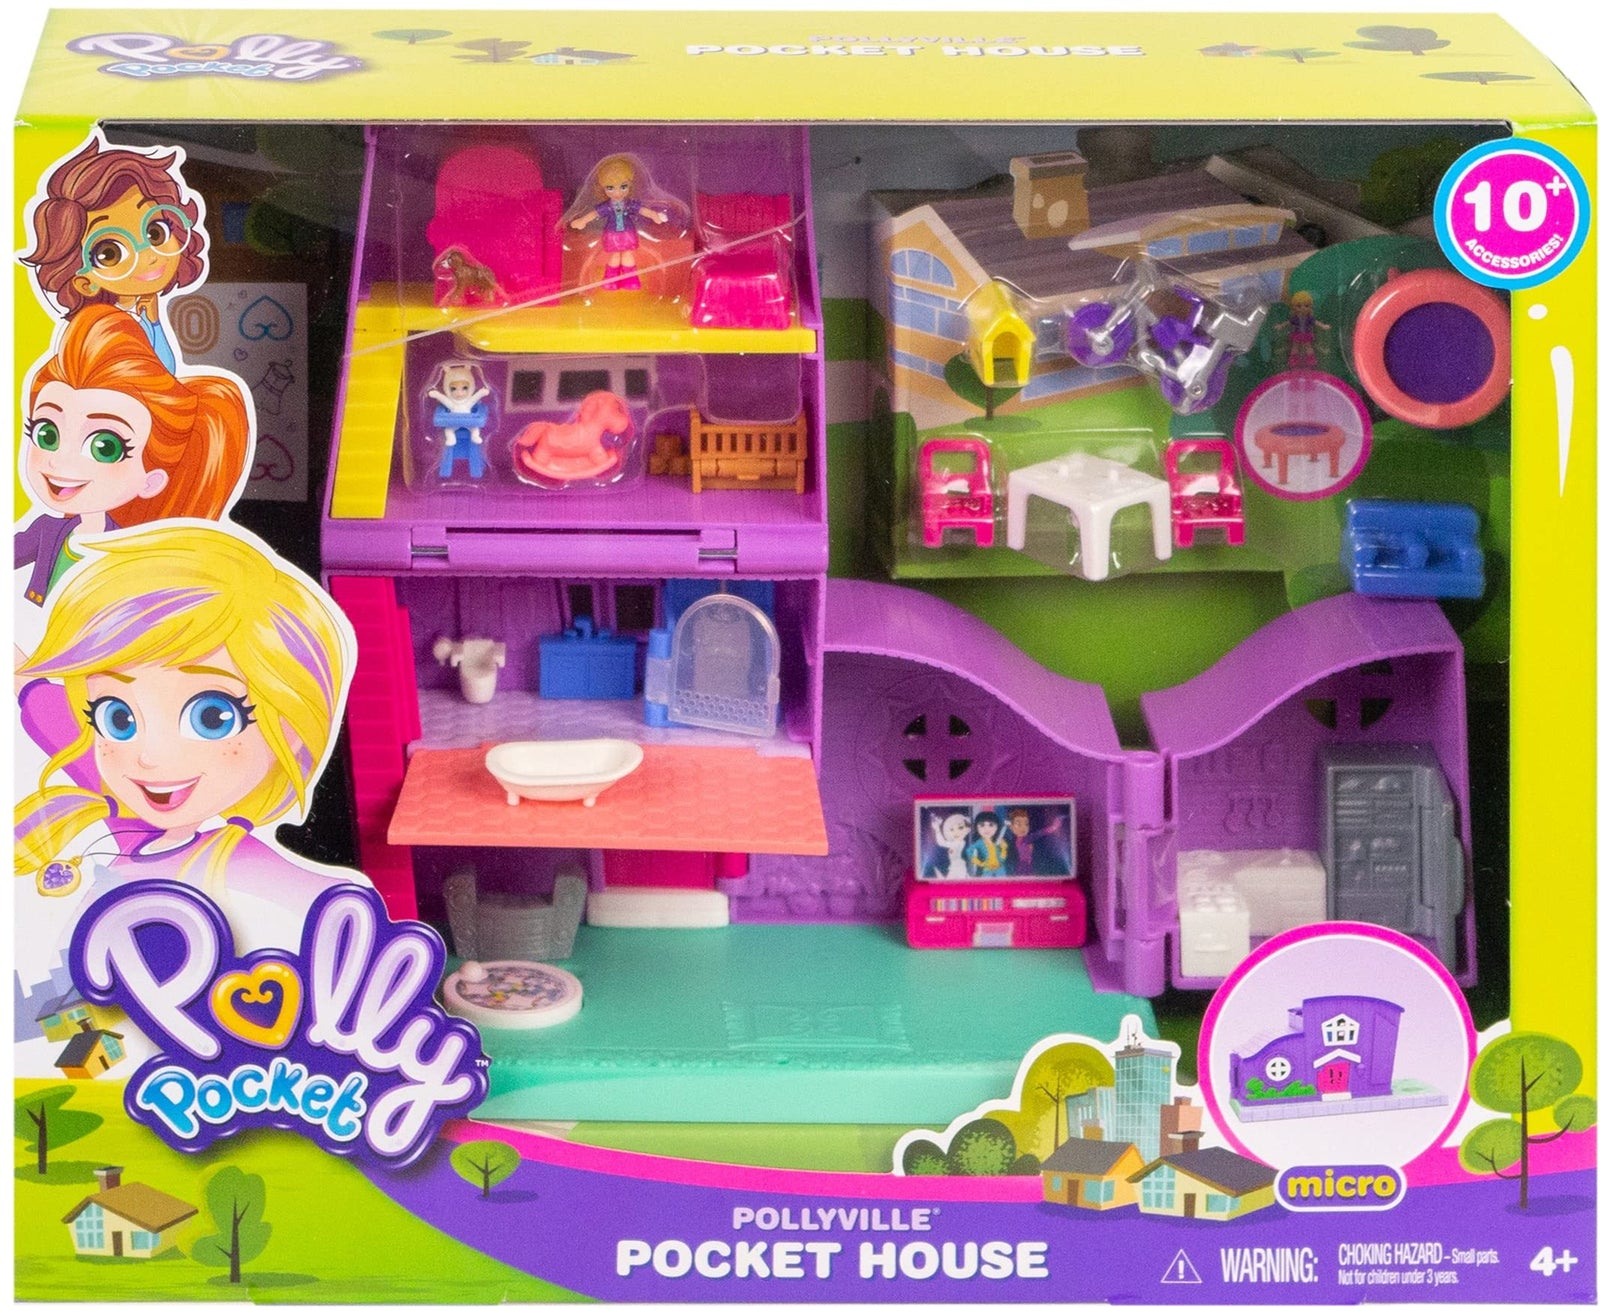 Pollyville Pocket House